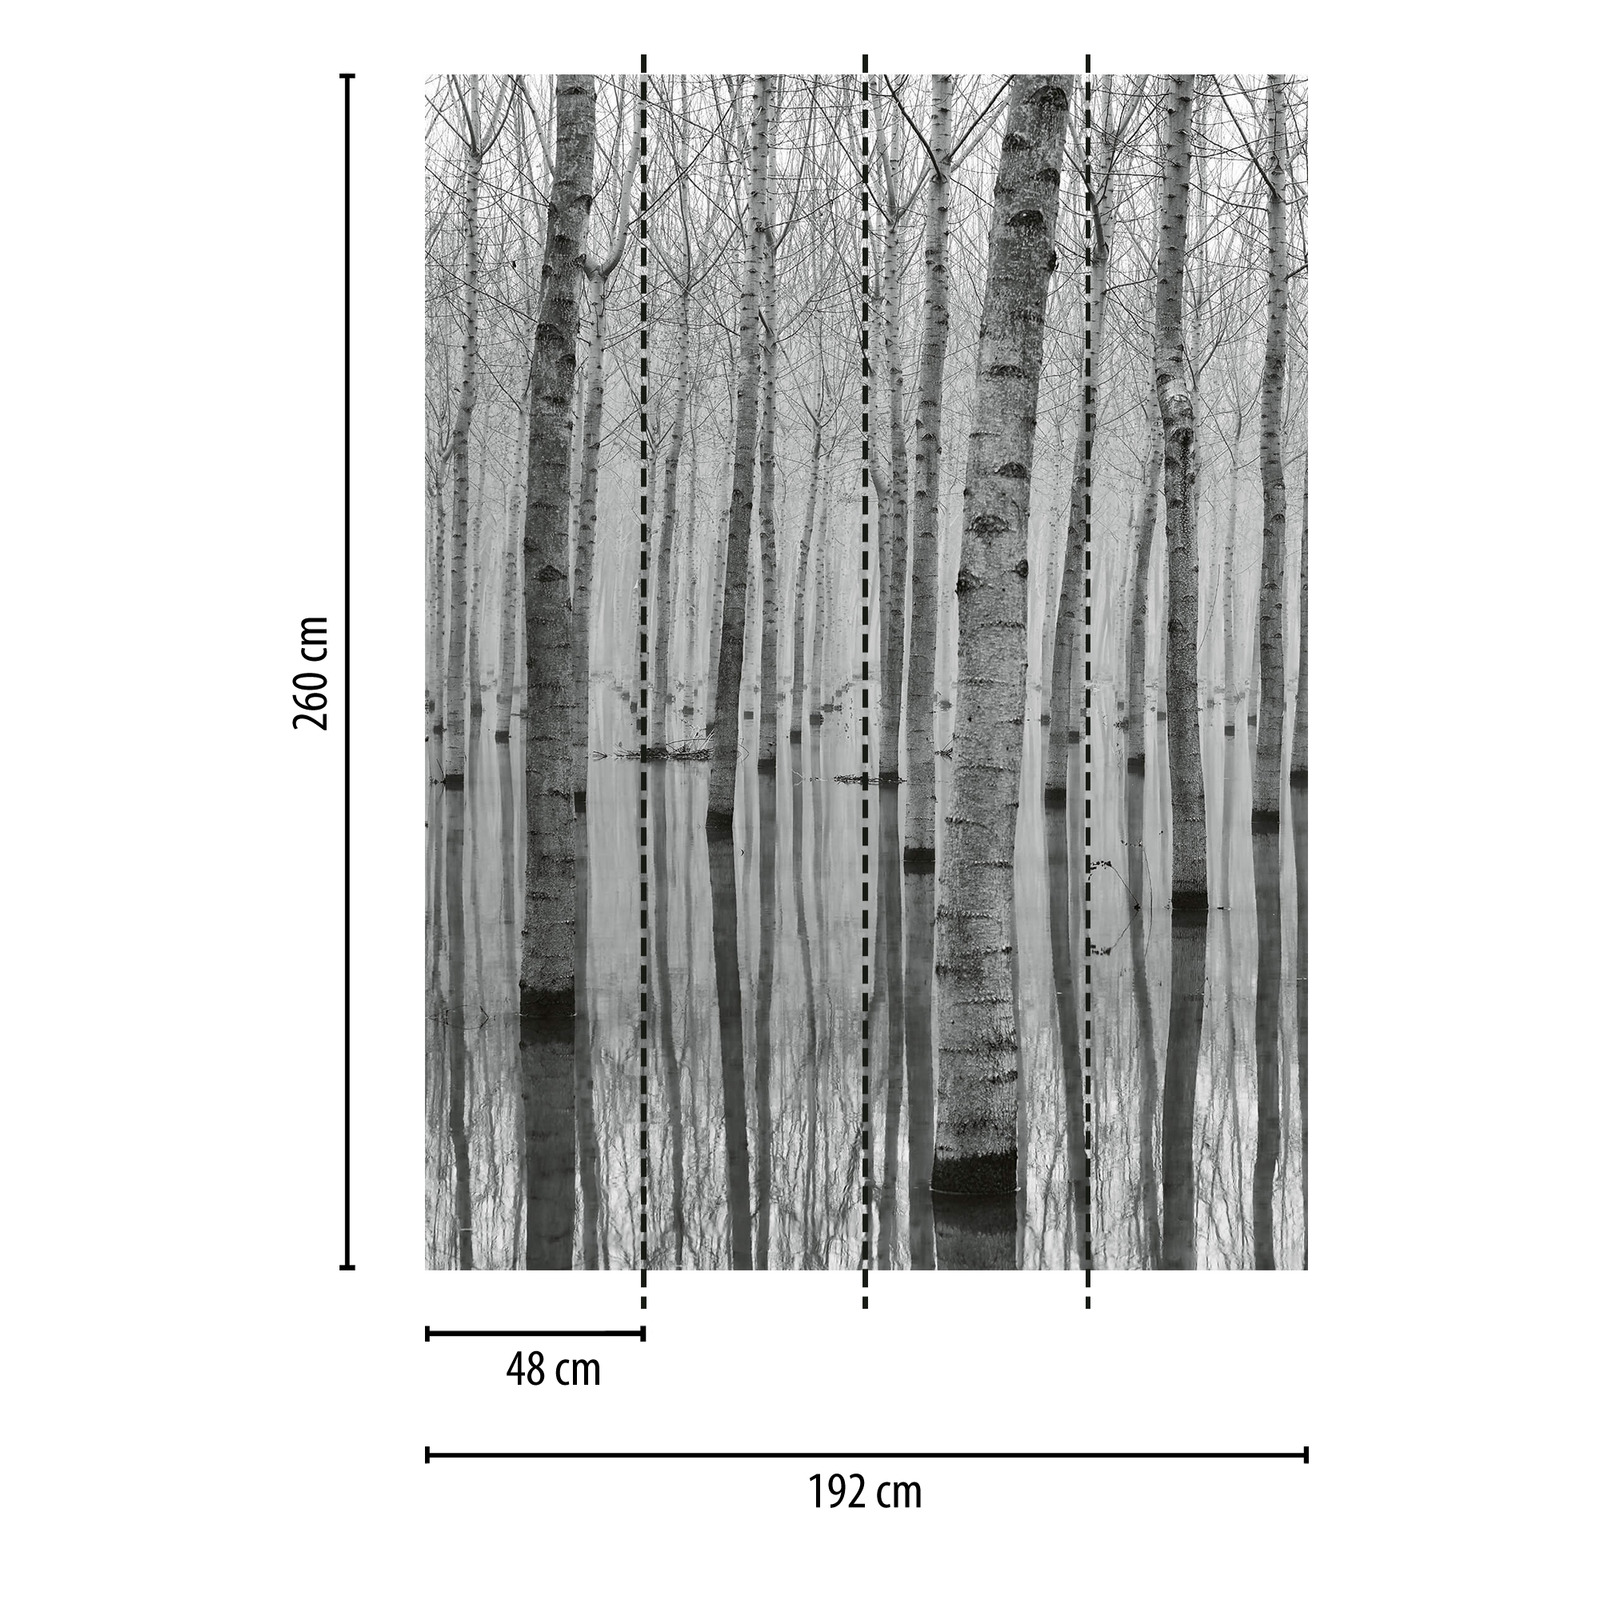             Fototapete Birkenwald im Wasser – Schwarz, Weiß, Grau
        